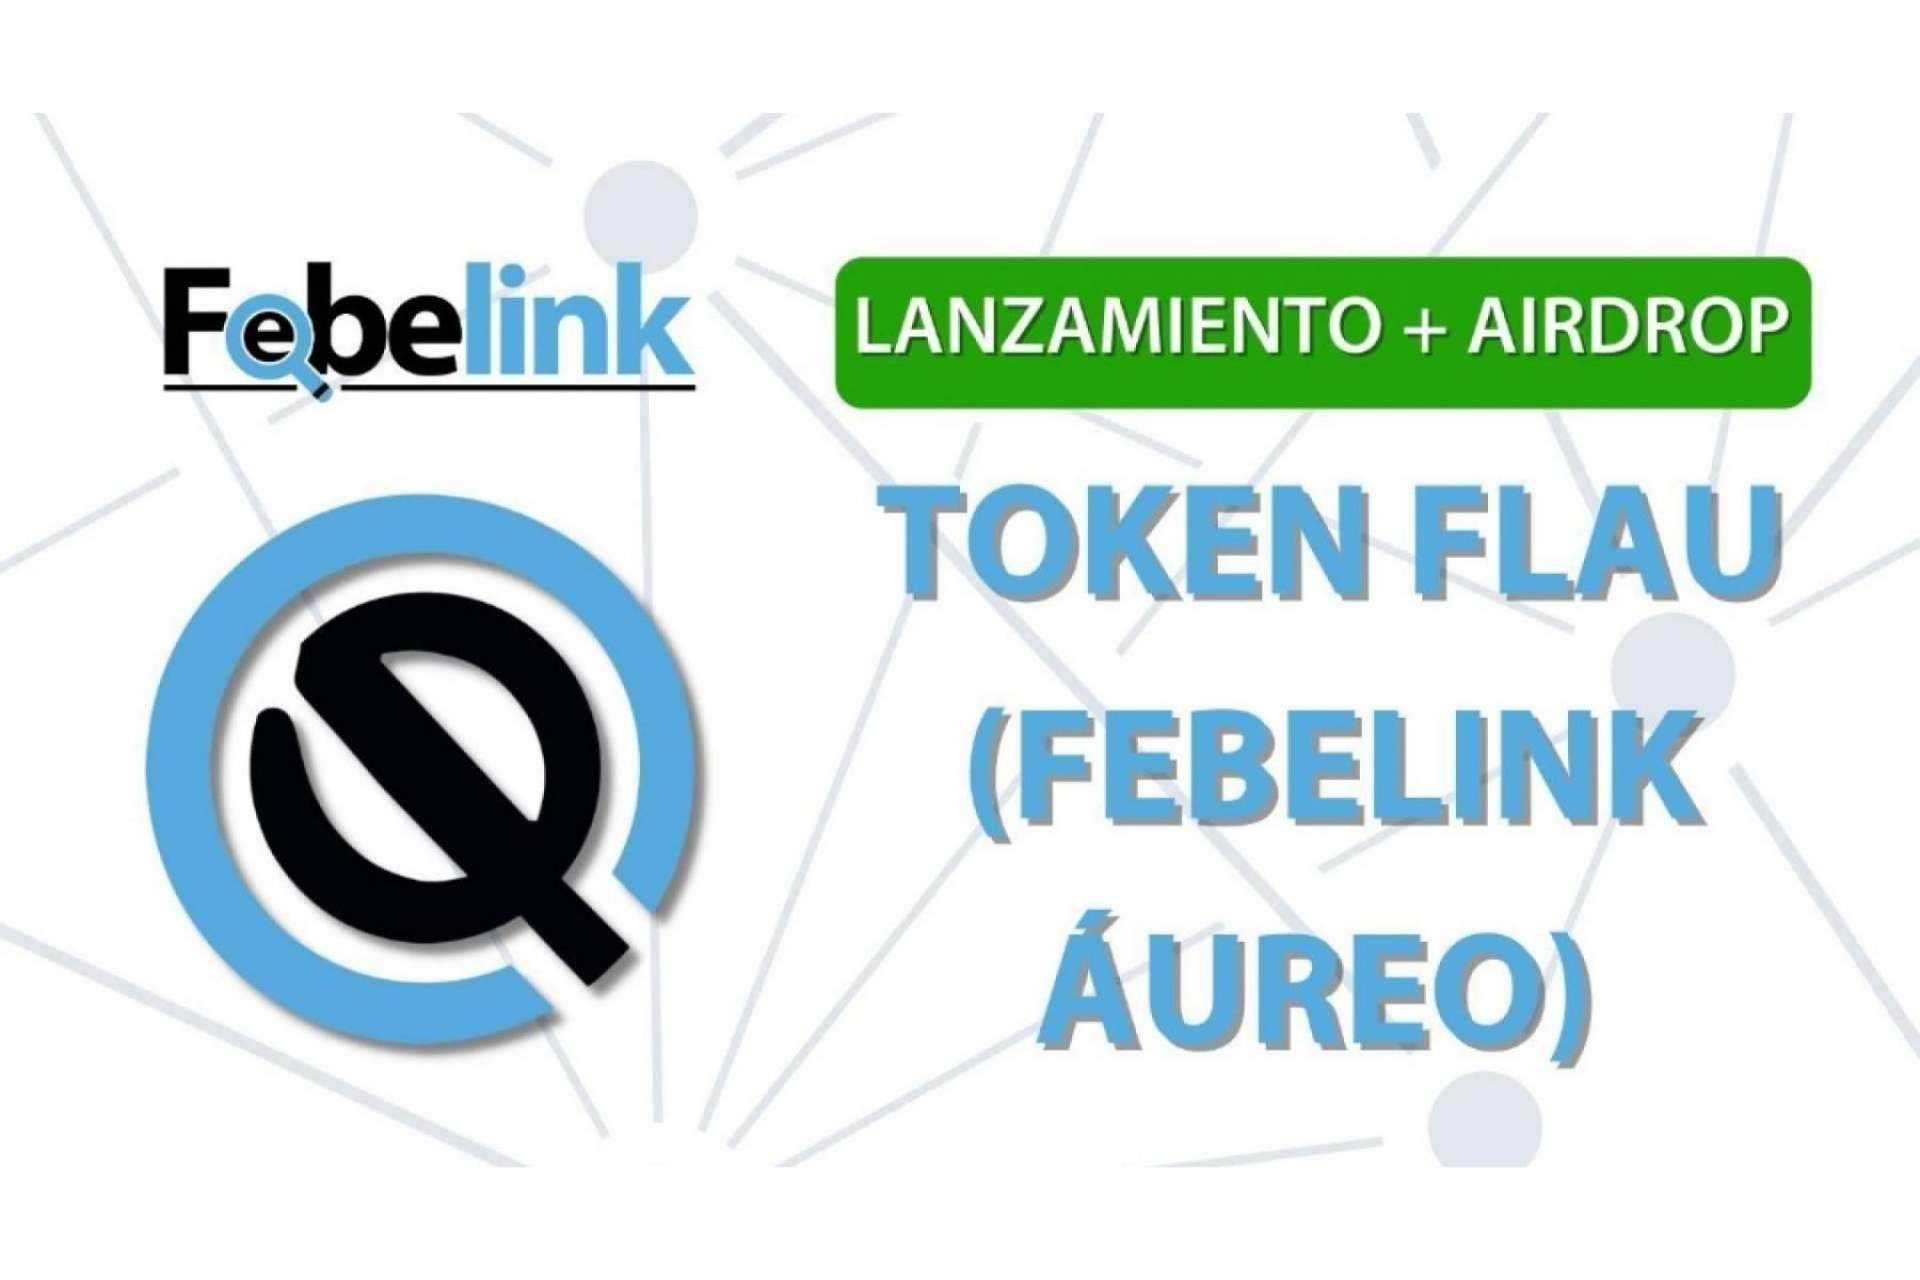 Febelink lanza su Airdrop en la oferta de lanzamiento de su token FLAU